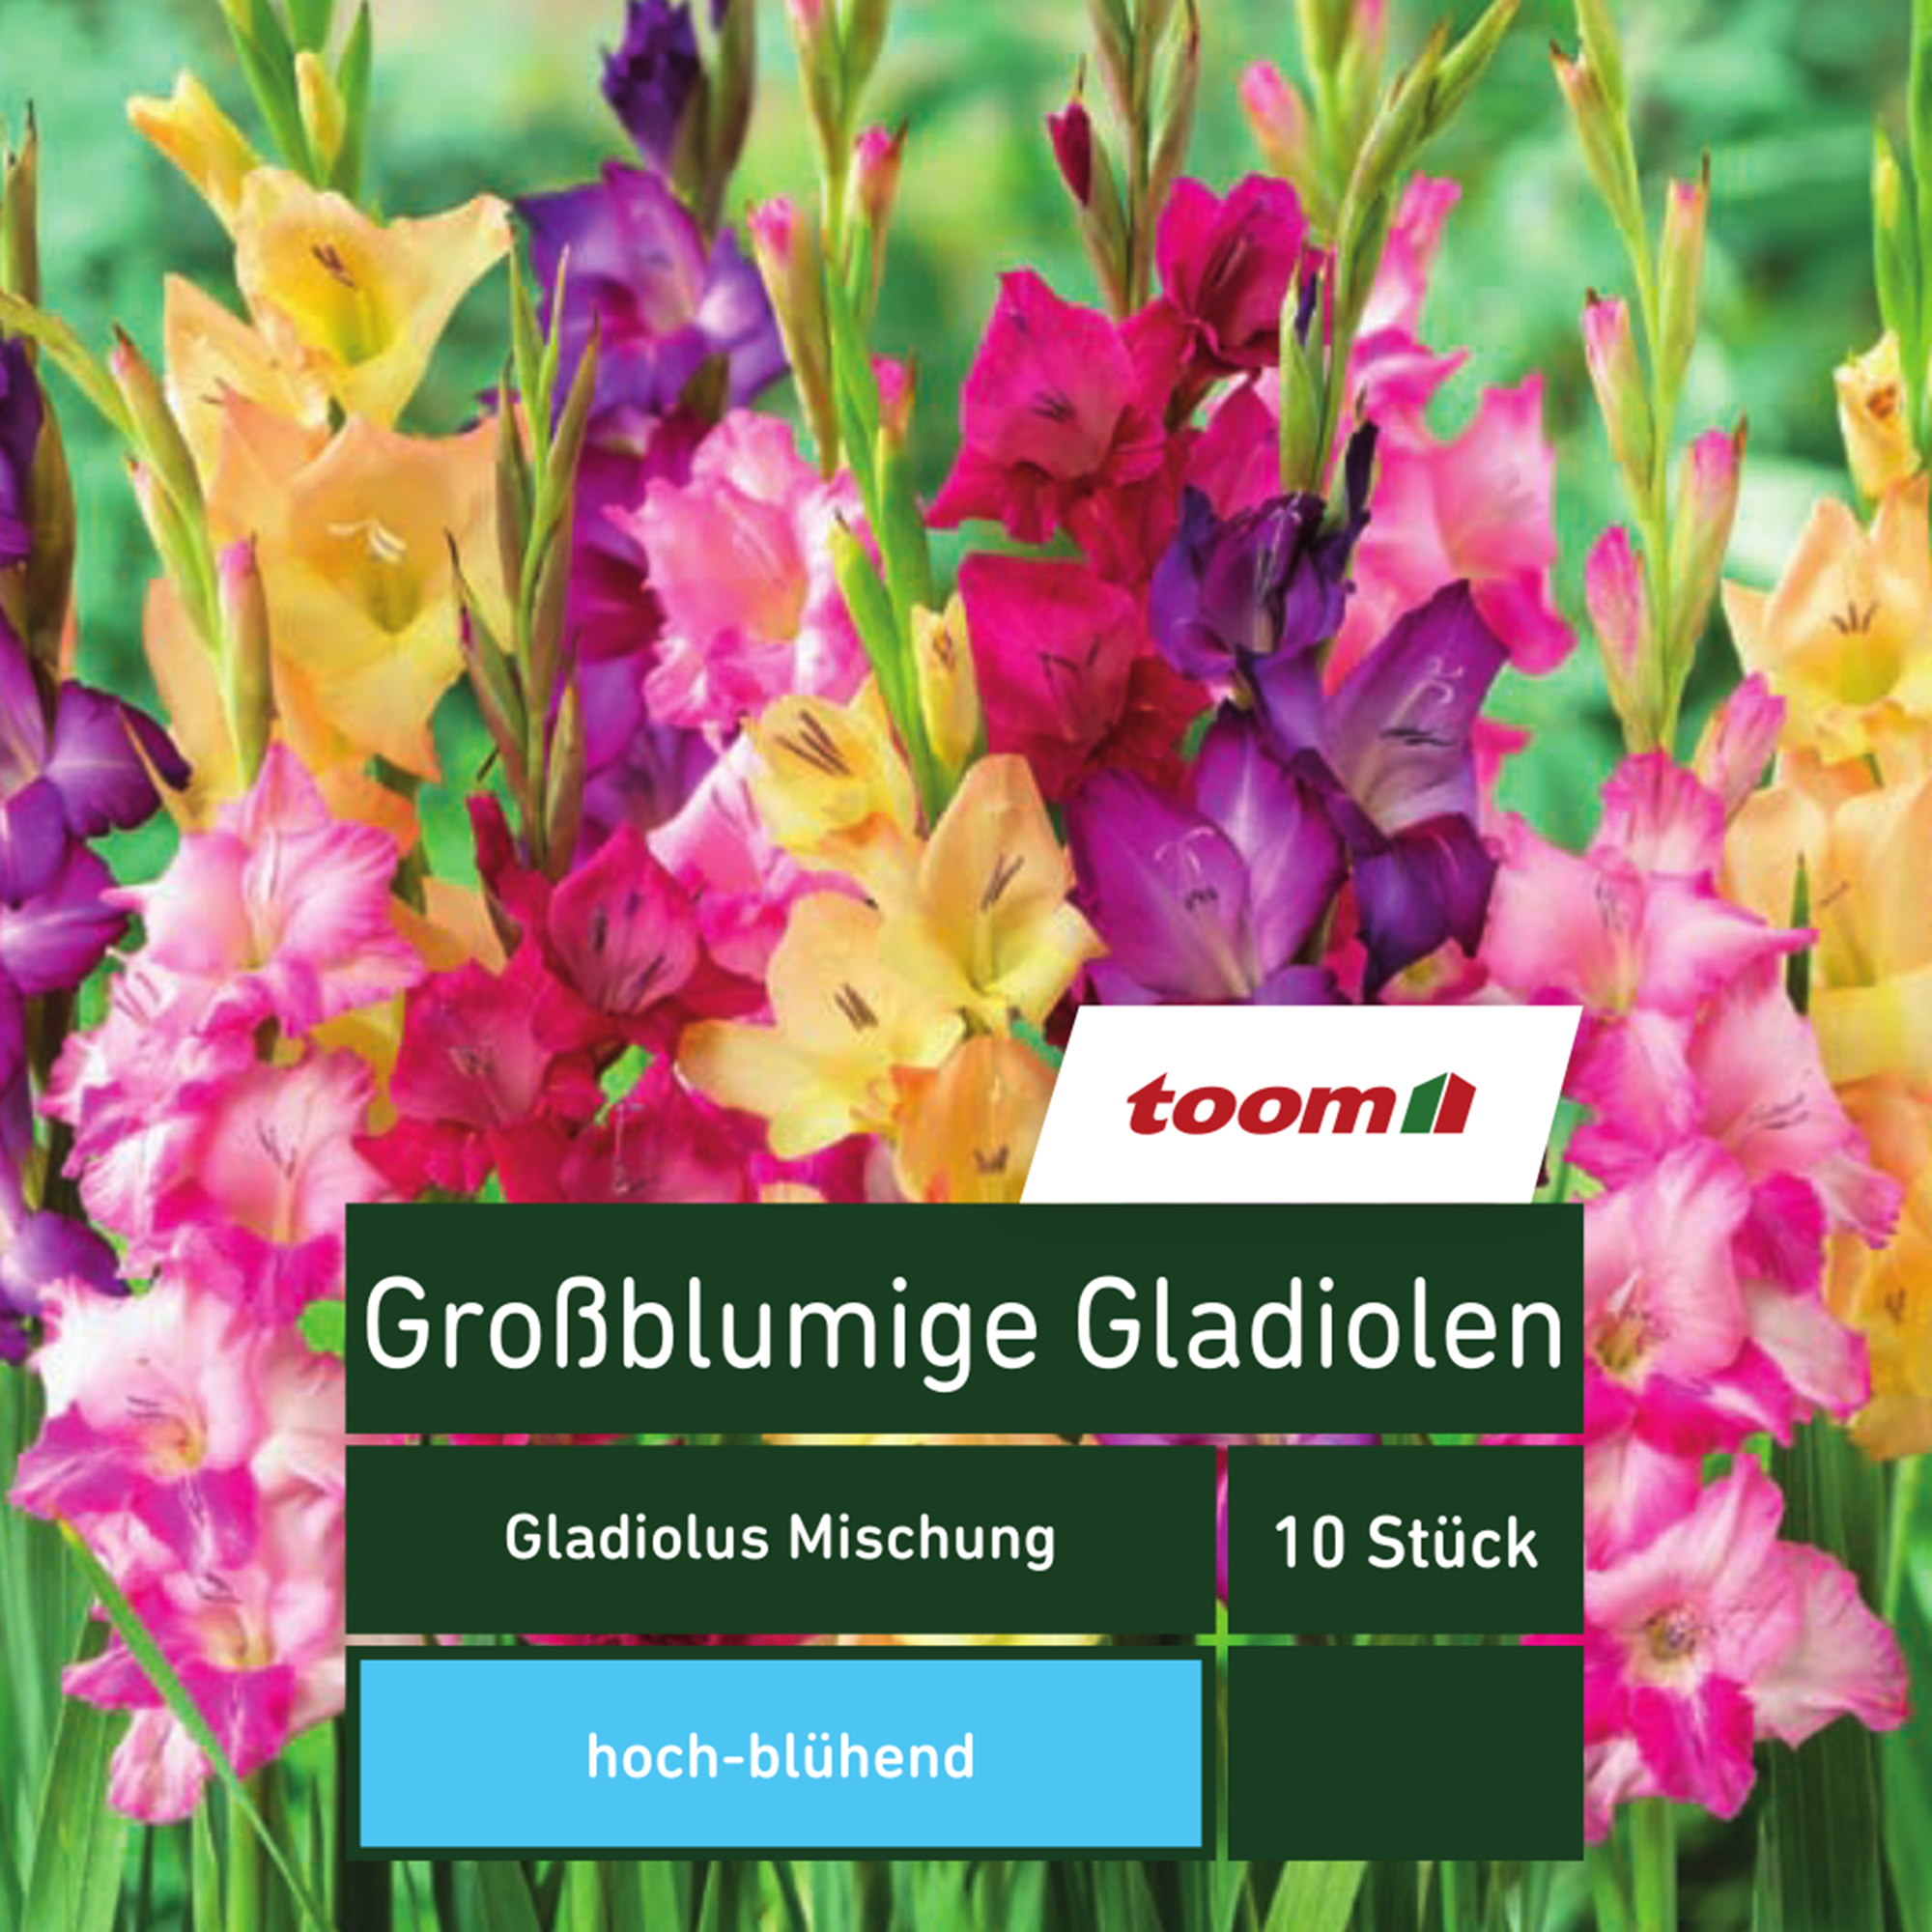 Großblumige Gladiolen 'Gladiolus Mischung', 10 Stück, mehrfarbig